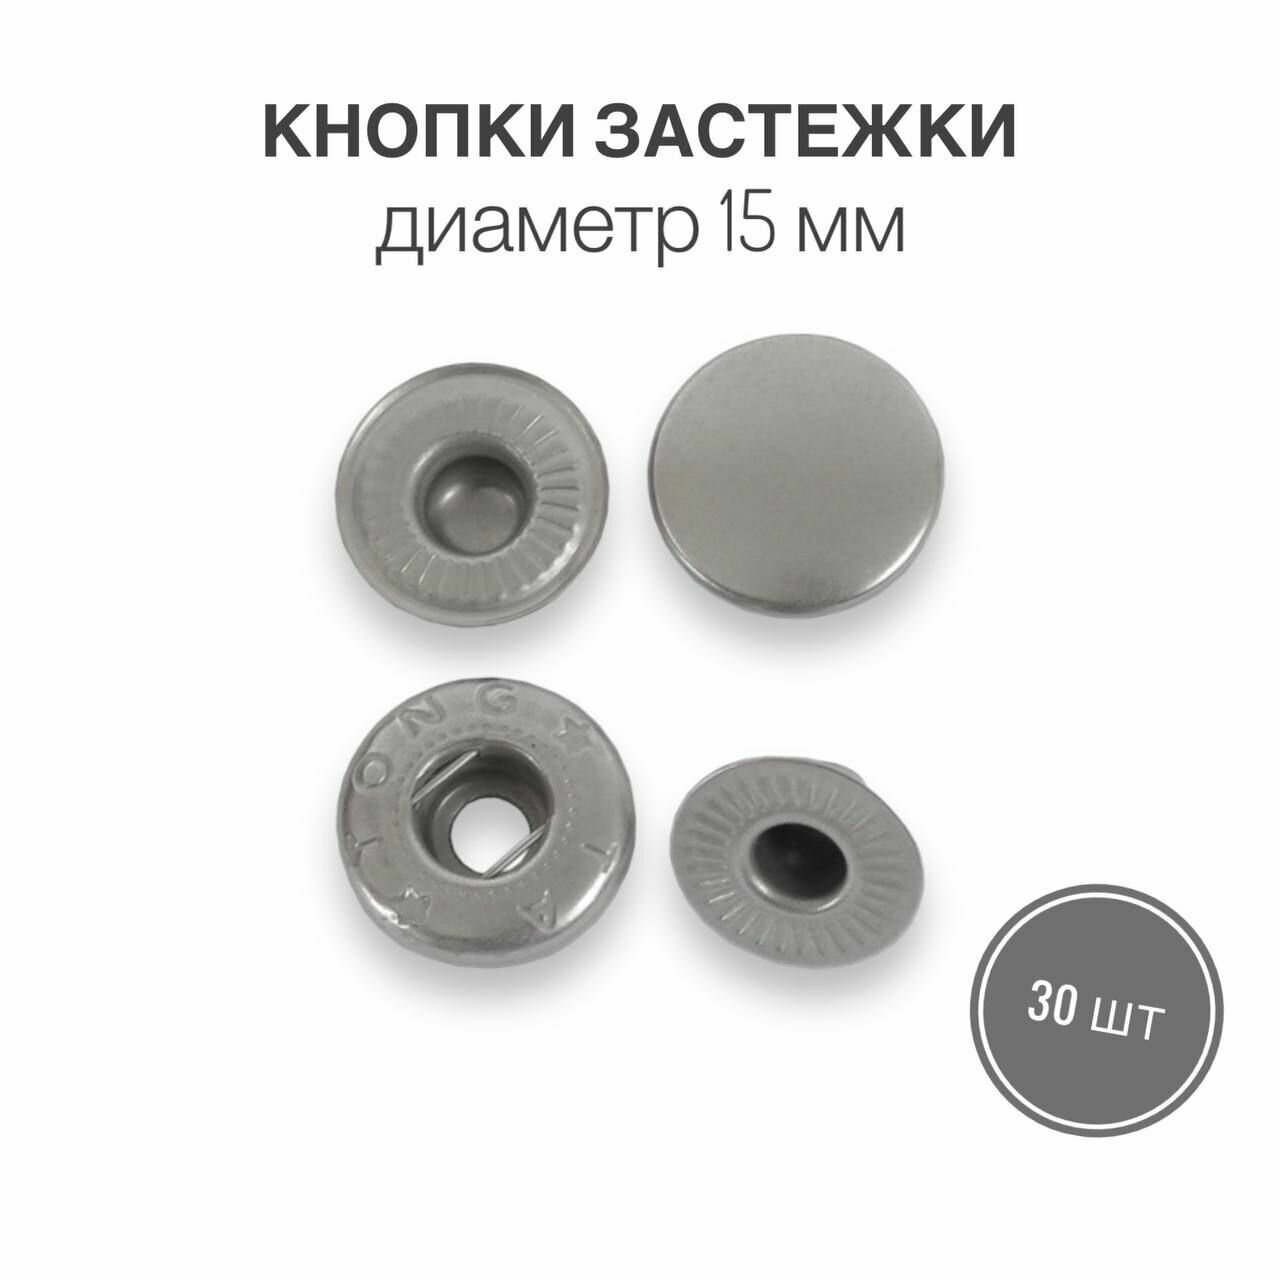 Кнопки застежки для одежды и рукоделия 15 мм матовый никель, 30 штук